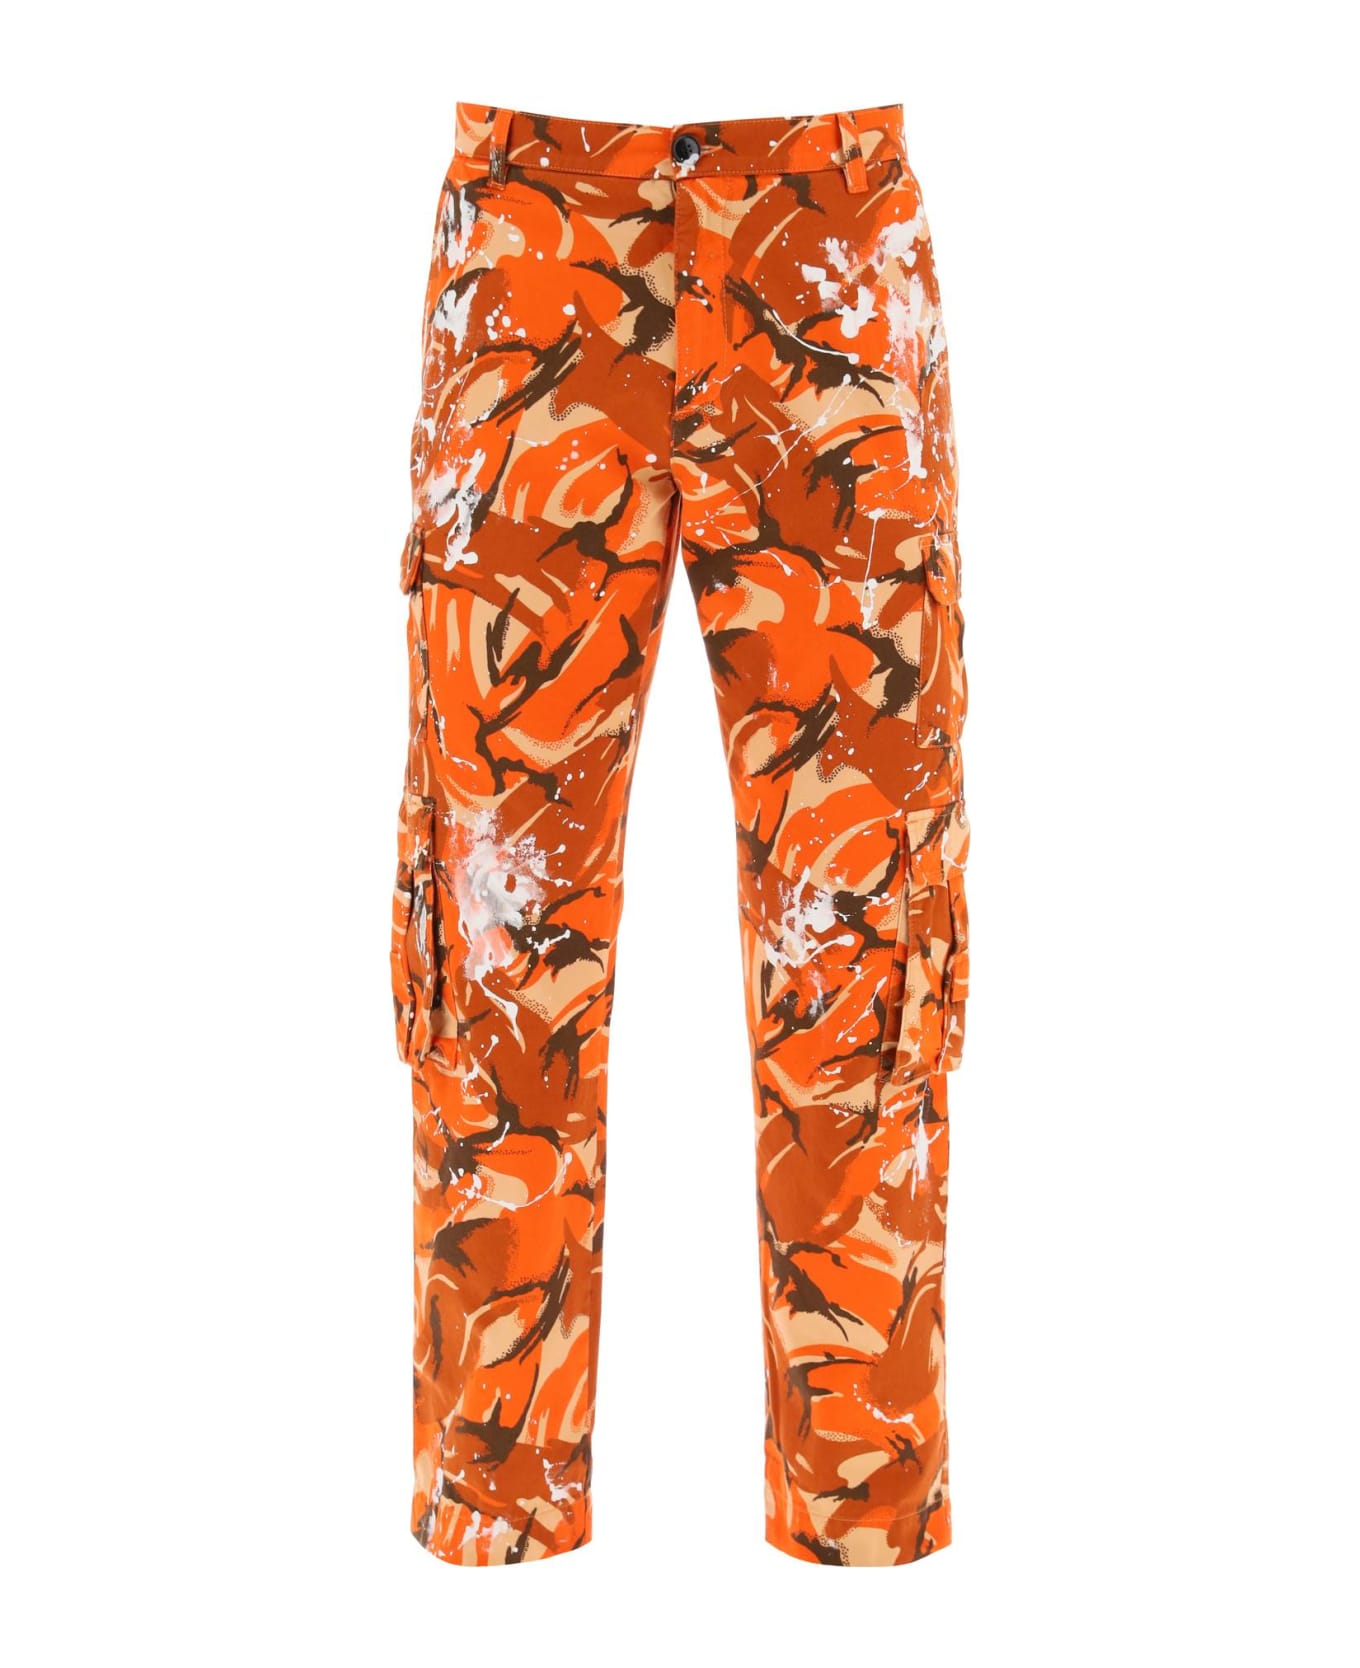 Martine Rose Camouflage Cargo Pants - ORANGE CAMO PAINT (Orange) ボトムス